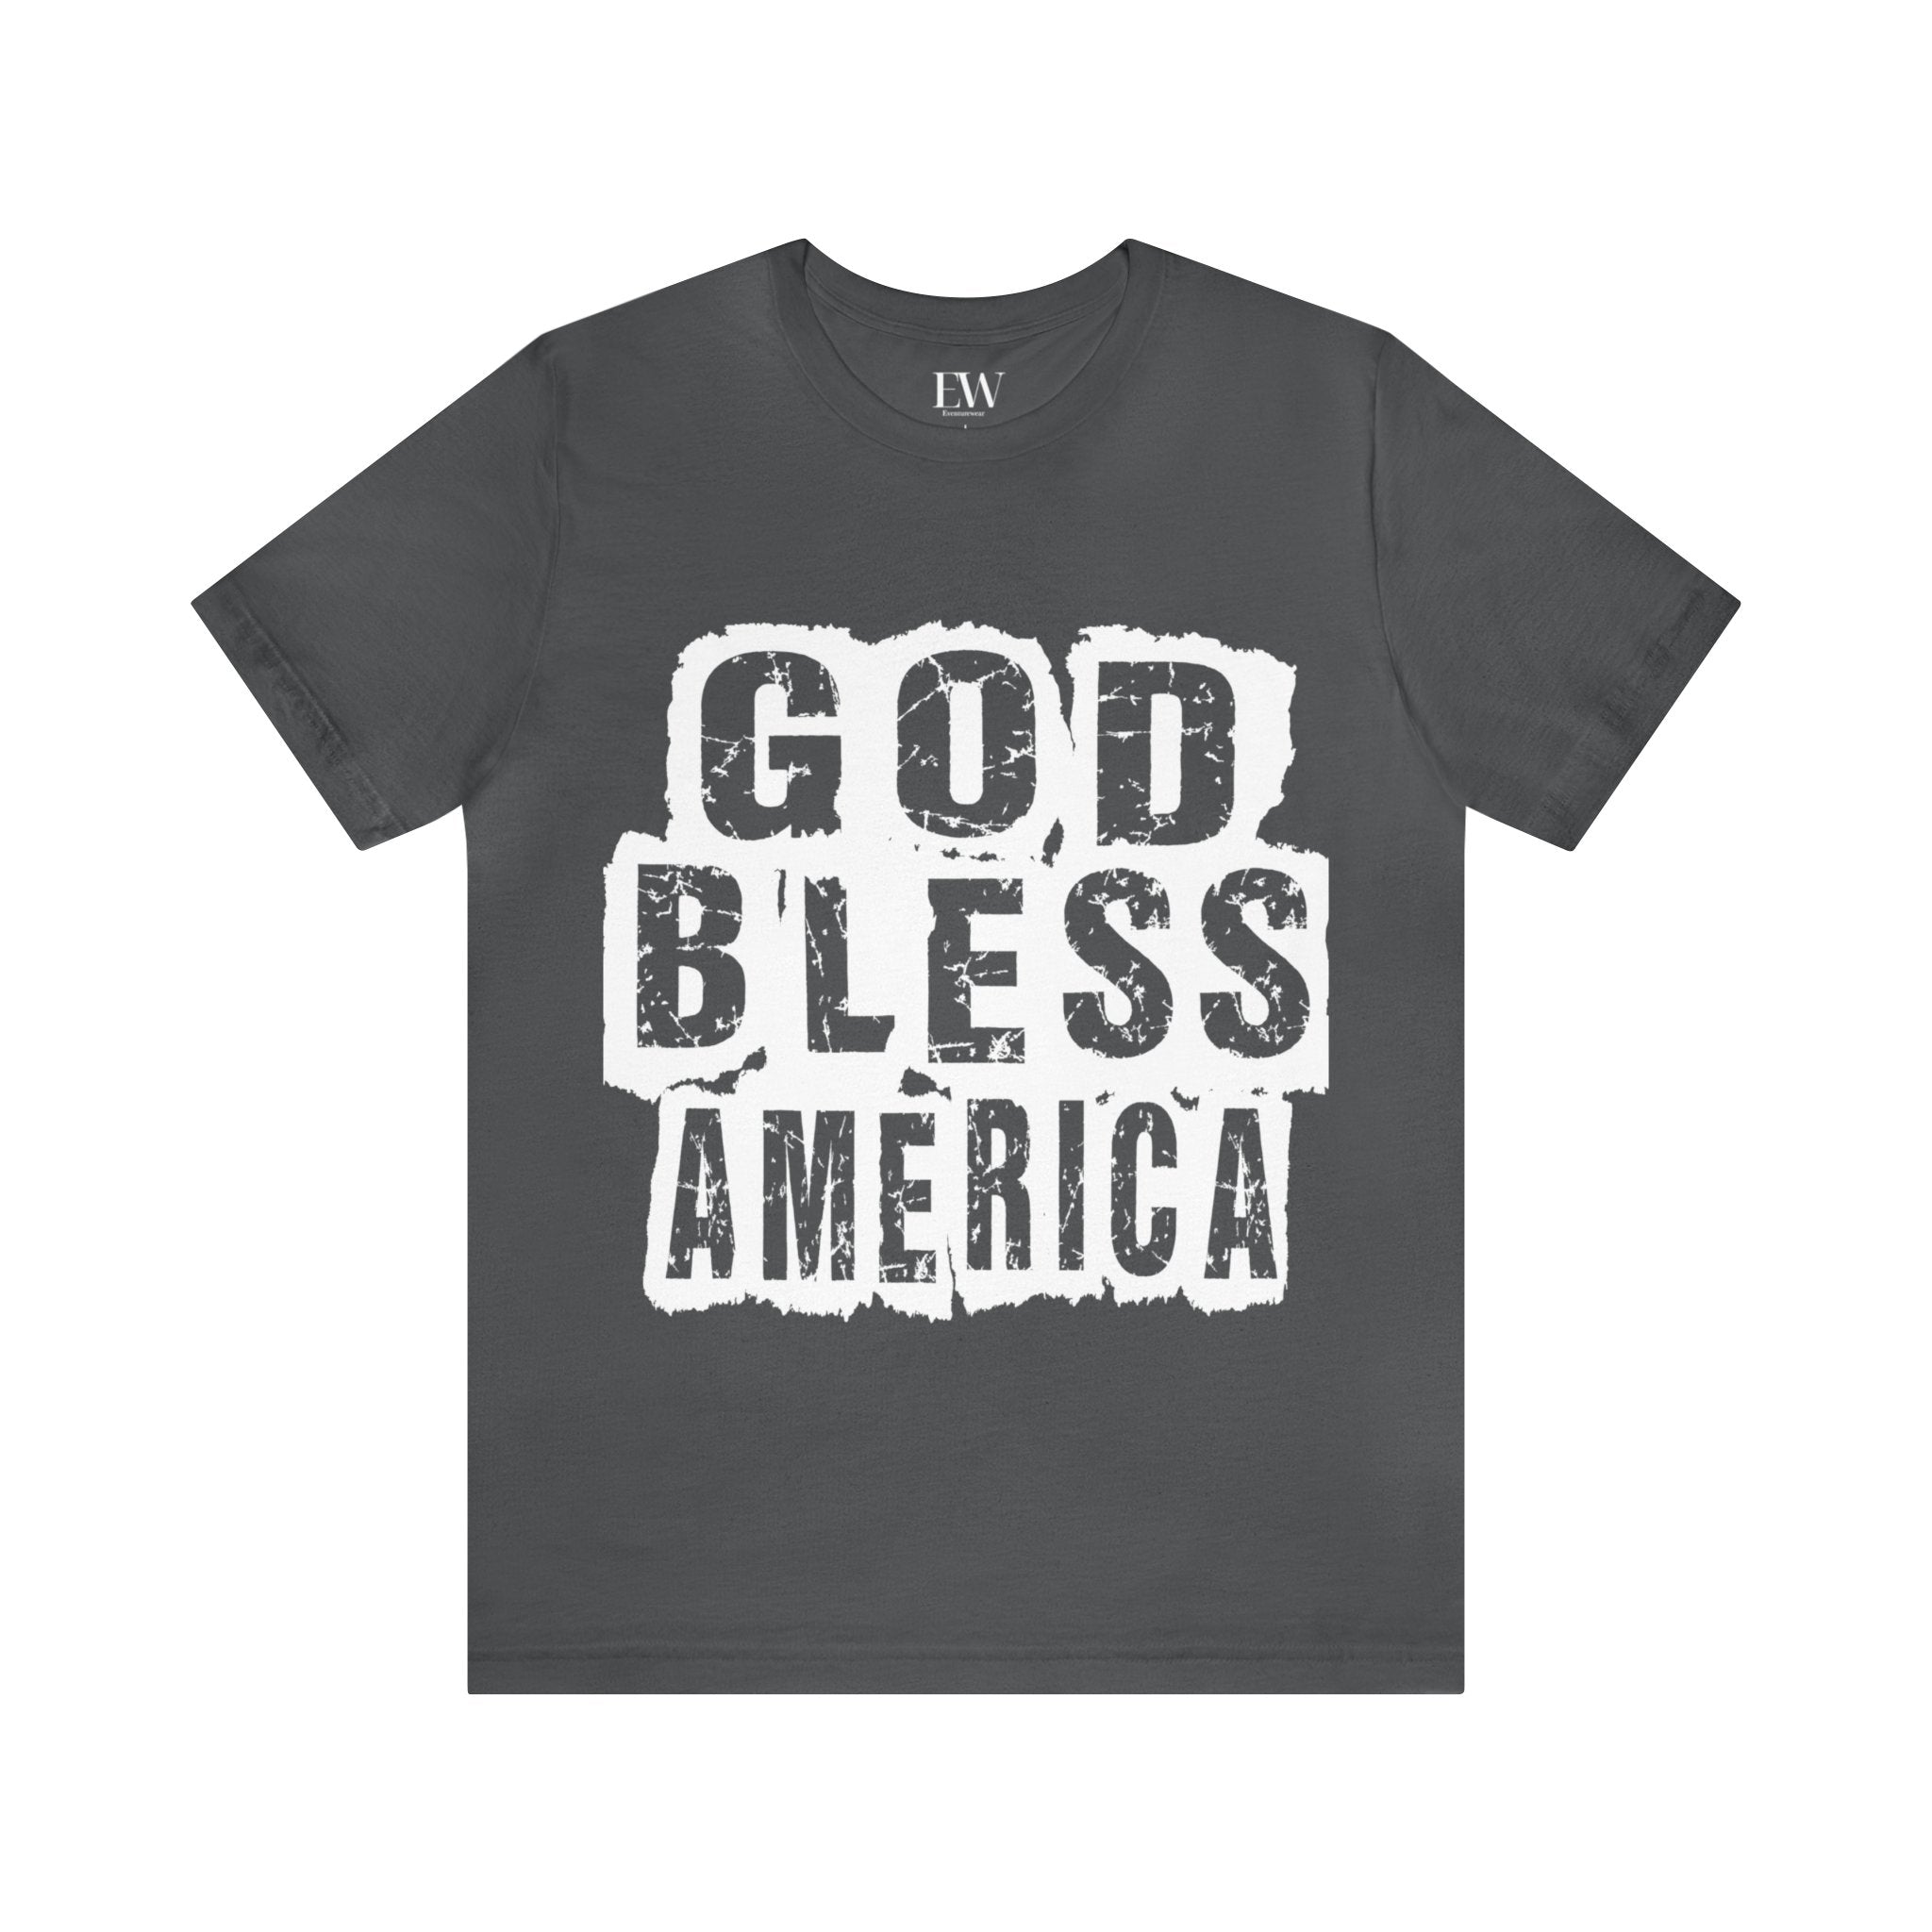 "GOD BLESS AMERICA" Tee